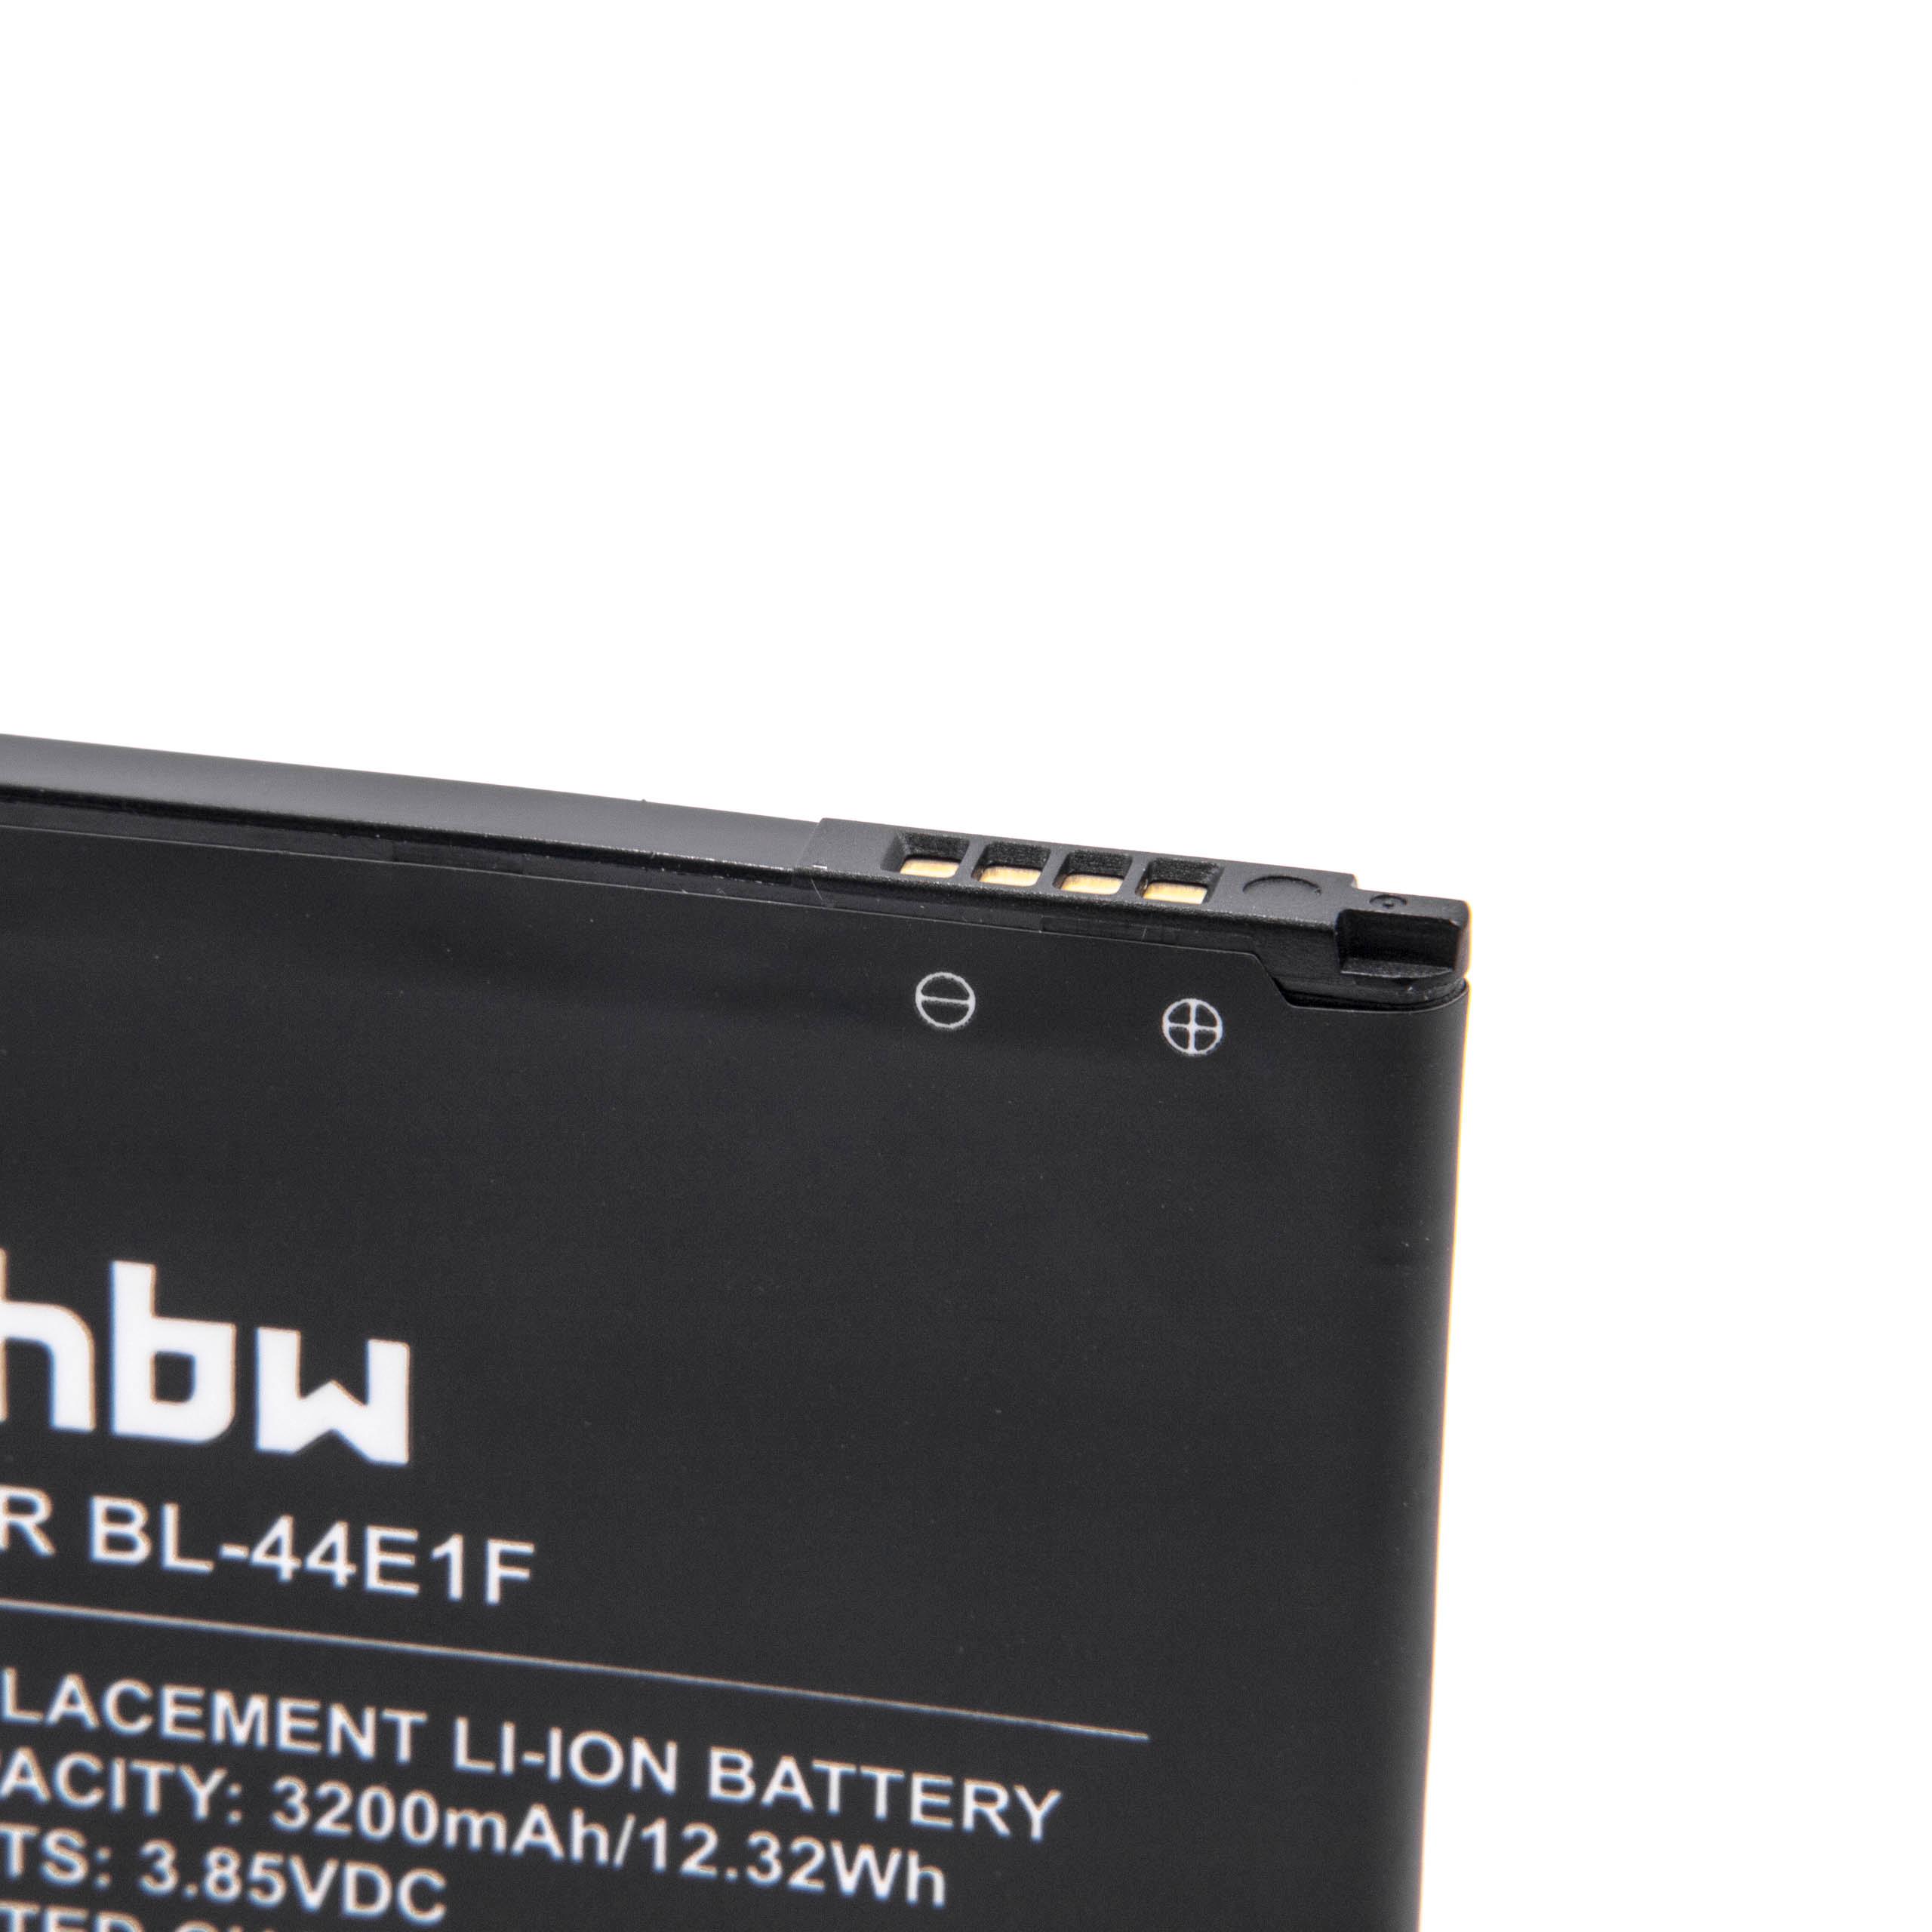 Batterie remplace LG PAC63320502, BL-44E1f, EAC63341101 pour téléphone portable - 3200mAh, 3,85V, Li-ion